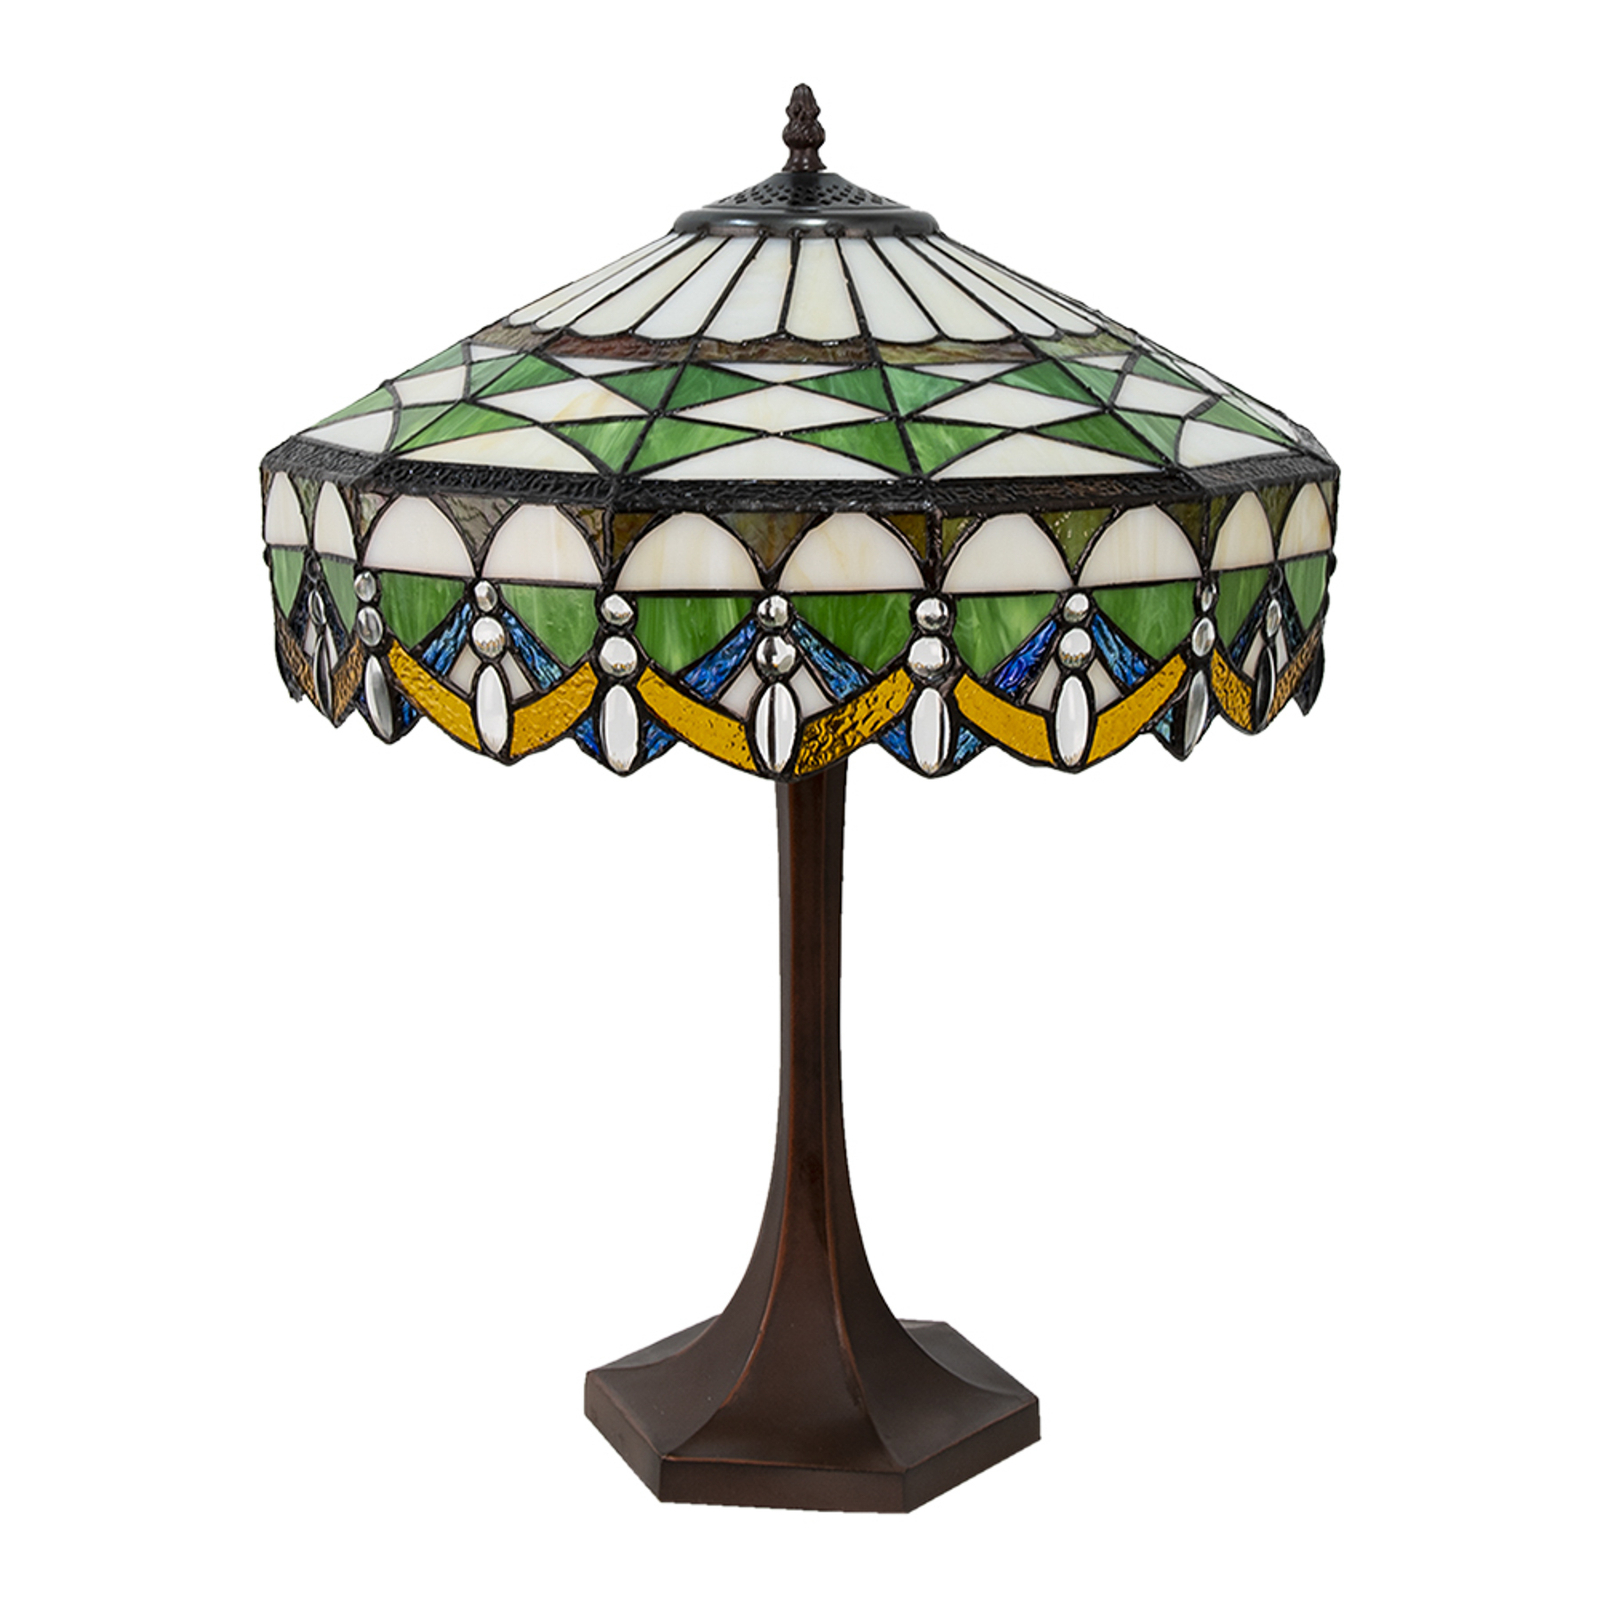 Lampe à poser 5LL-6086 en vert, style Tiffany